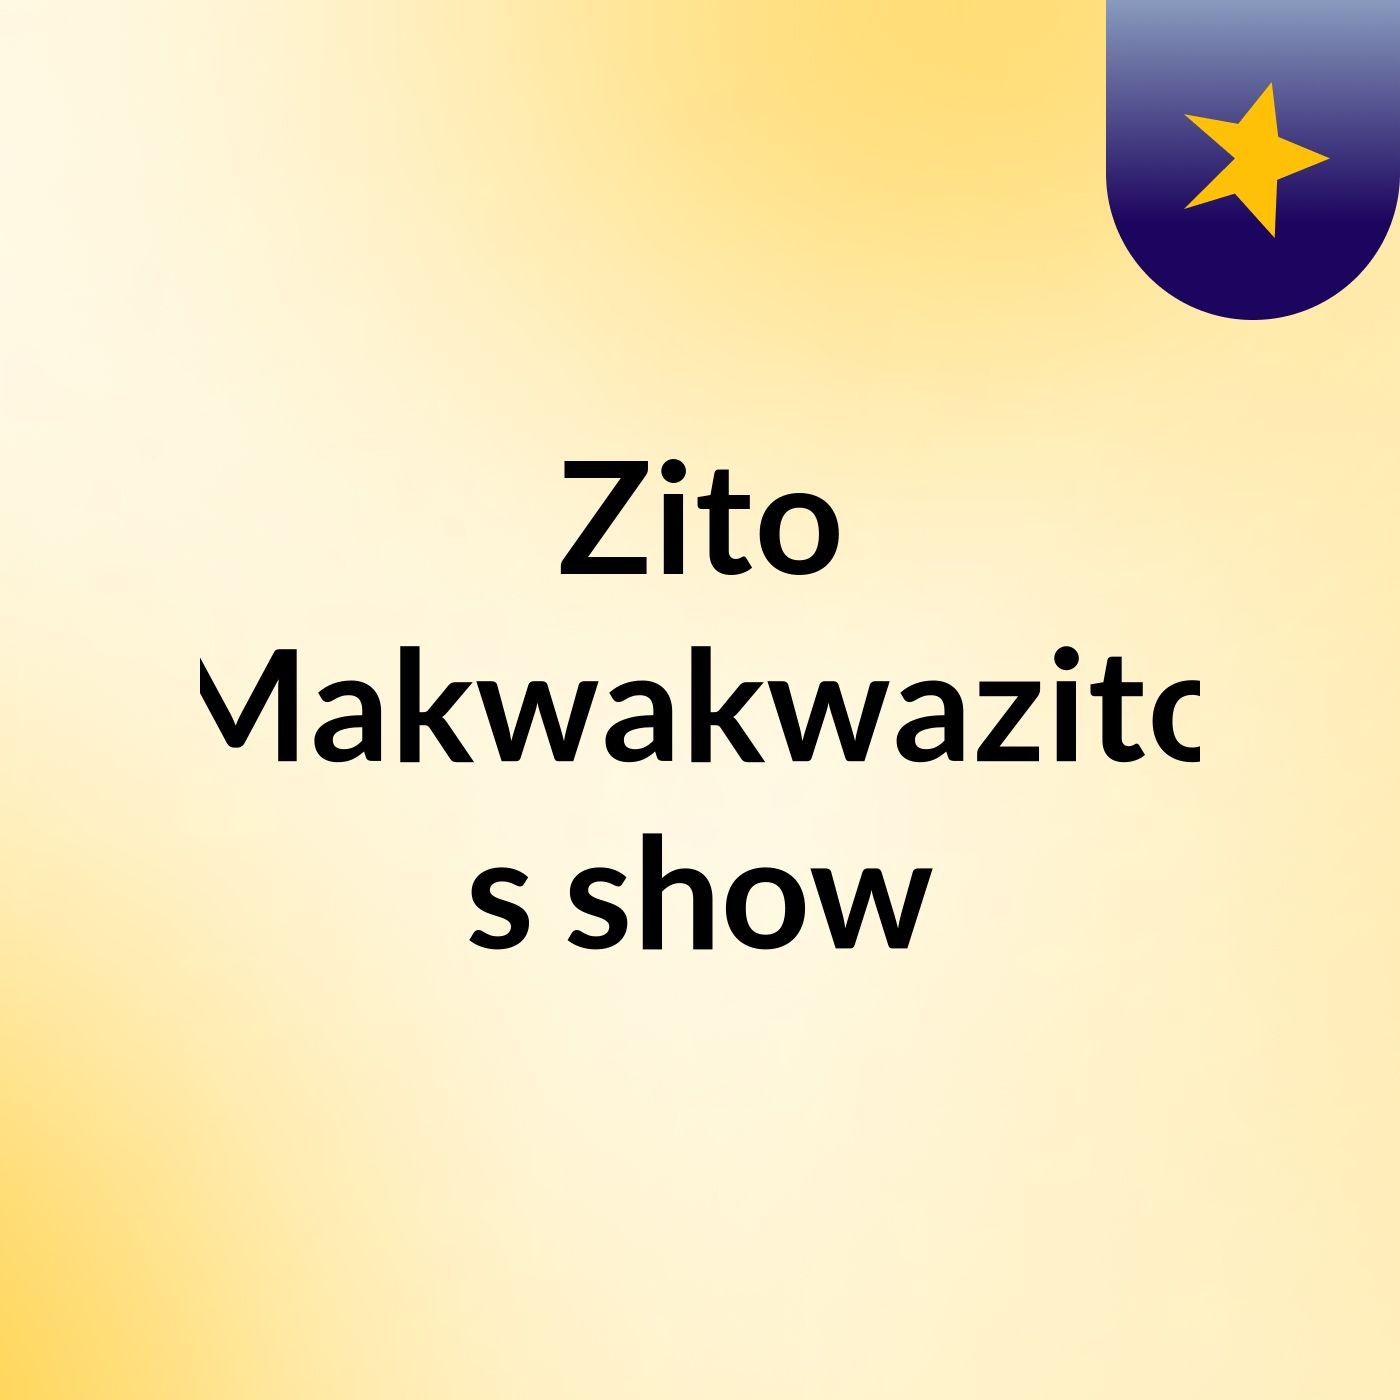 Zito Makwakwazito's show